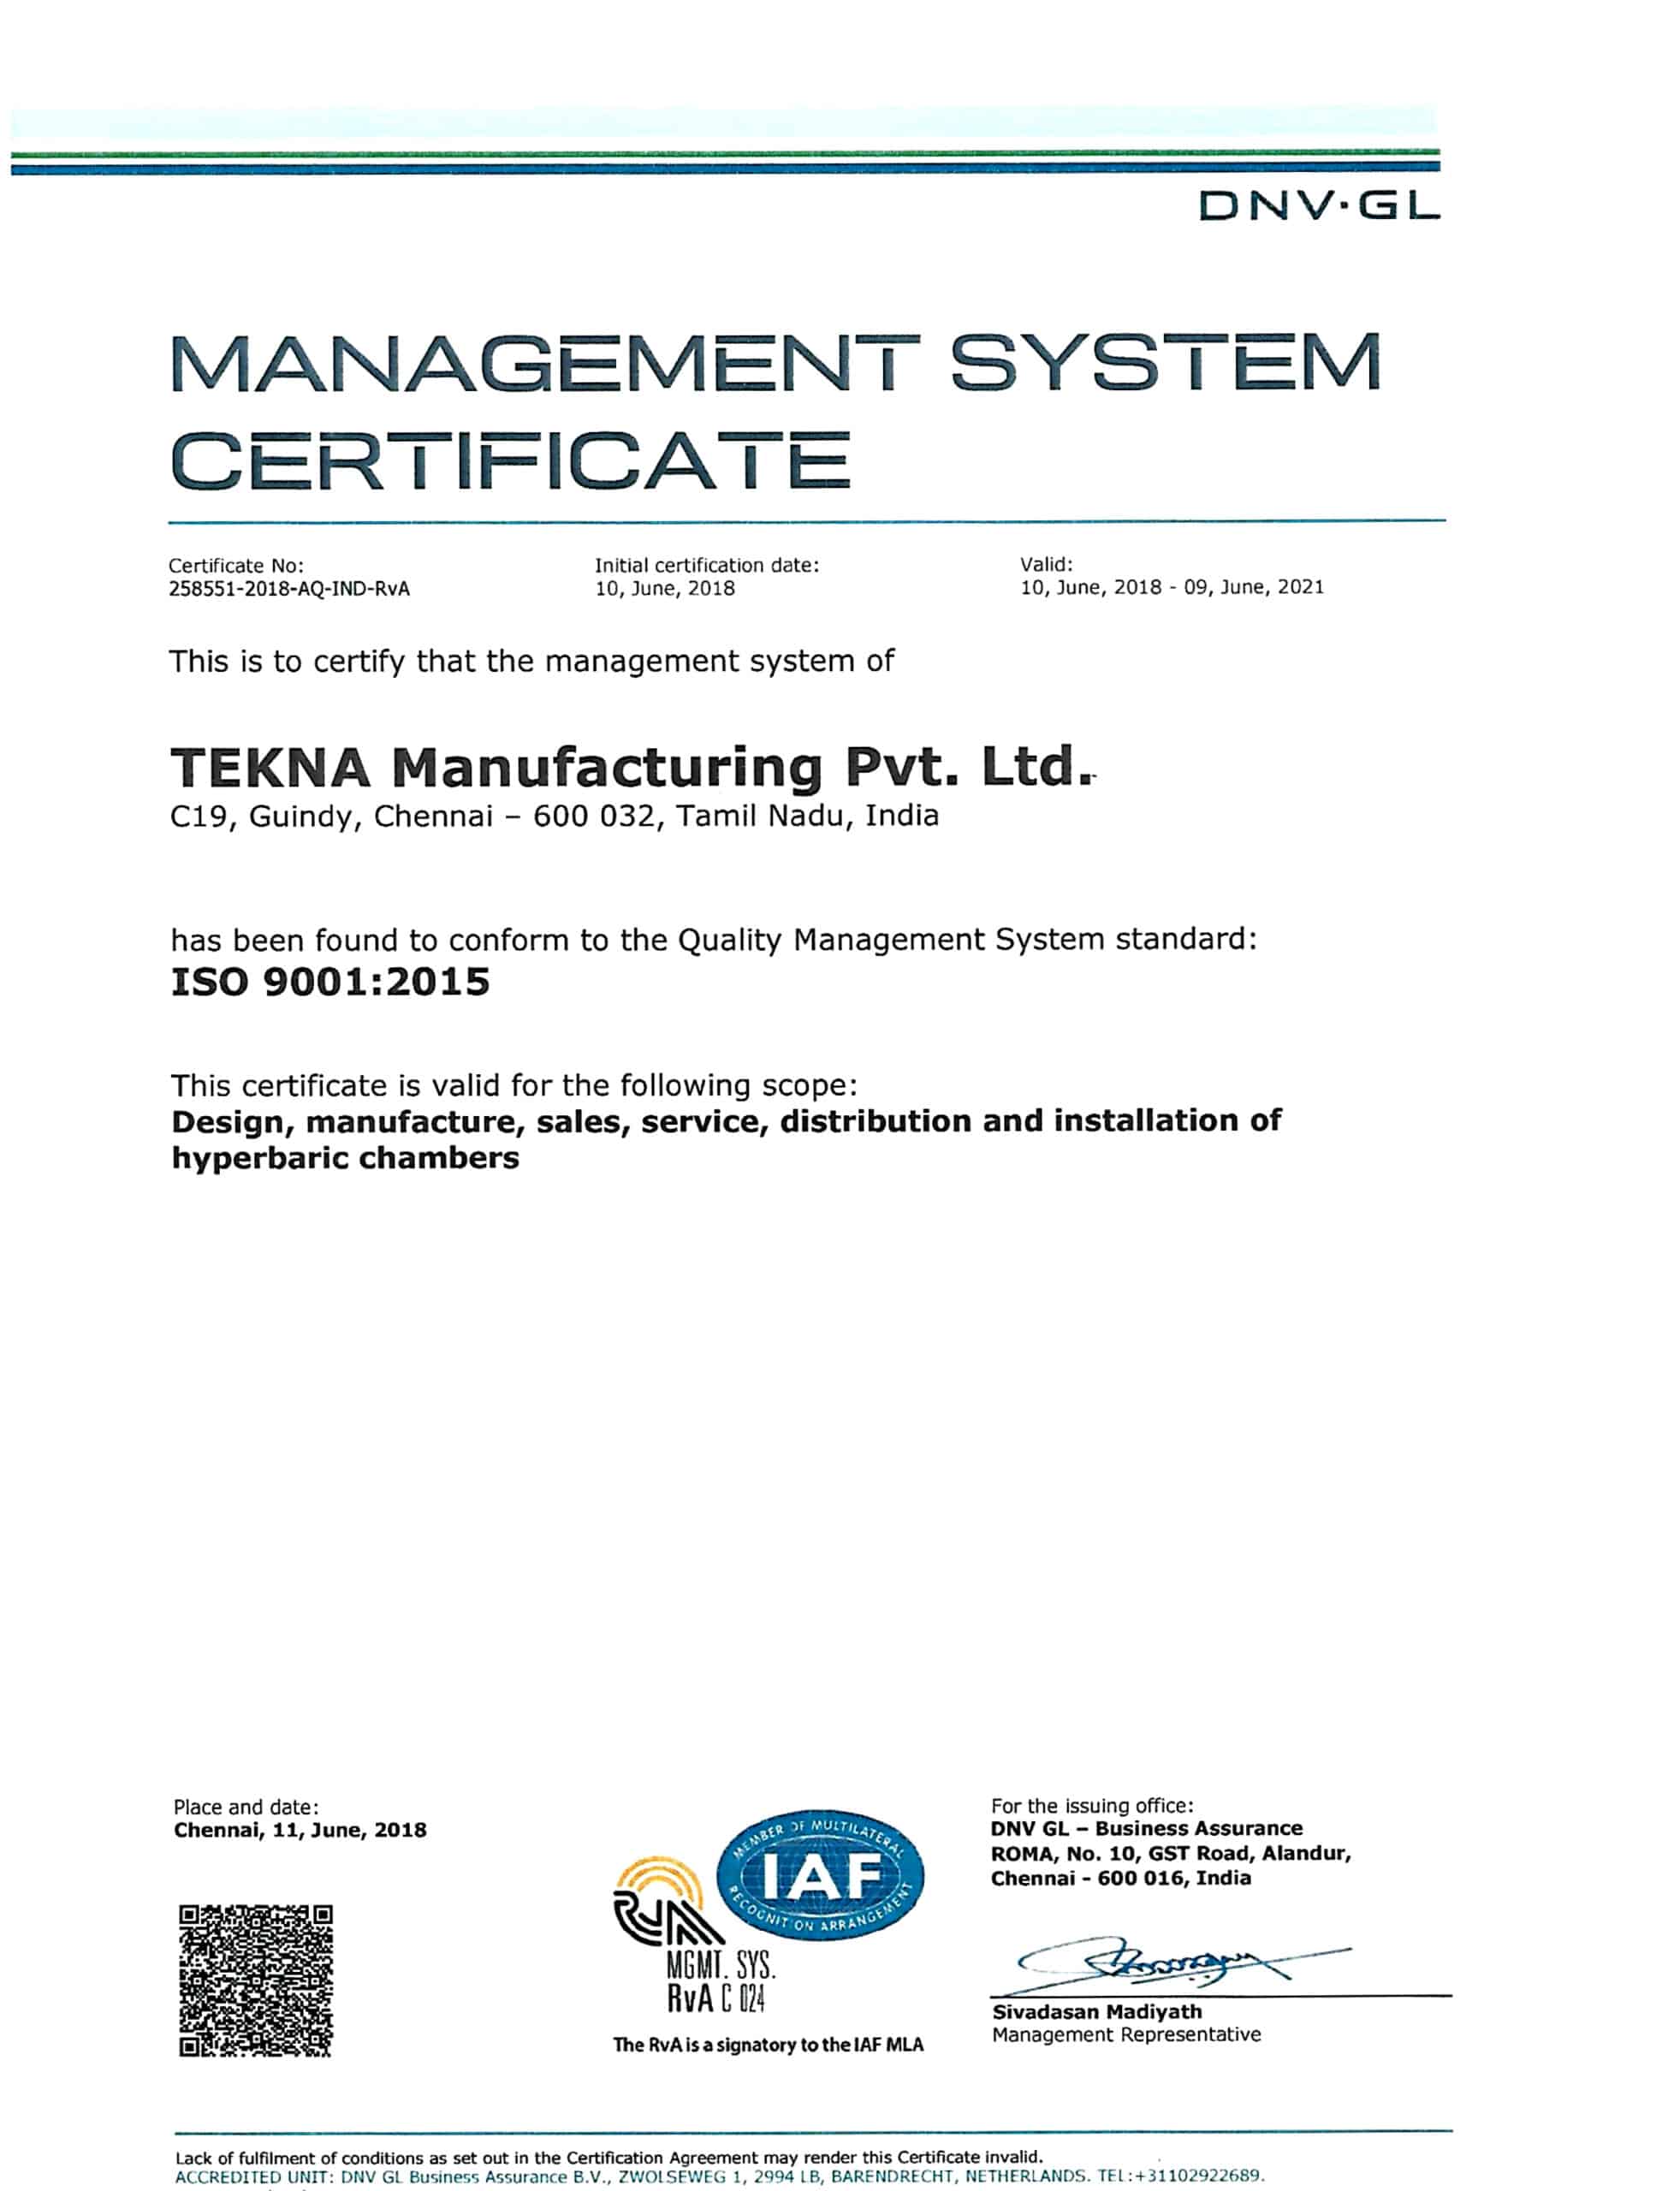 TEKNA VERVAARDIGING ISO 9001-2015